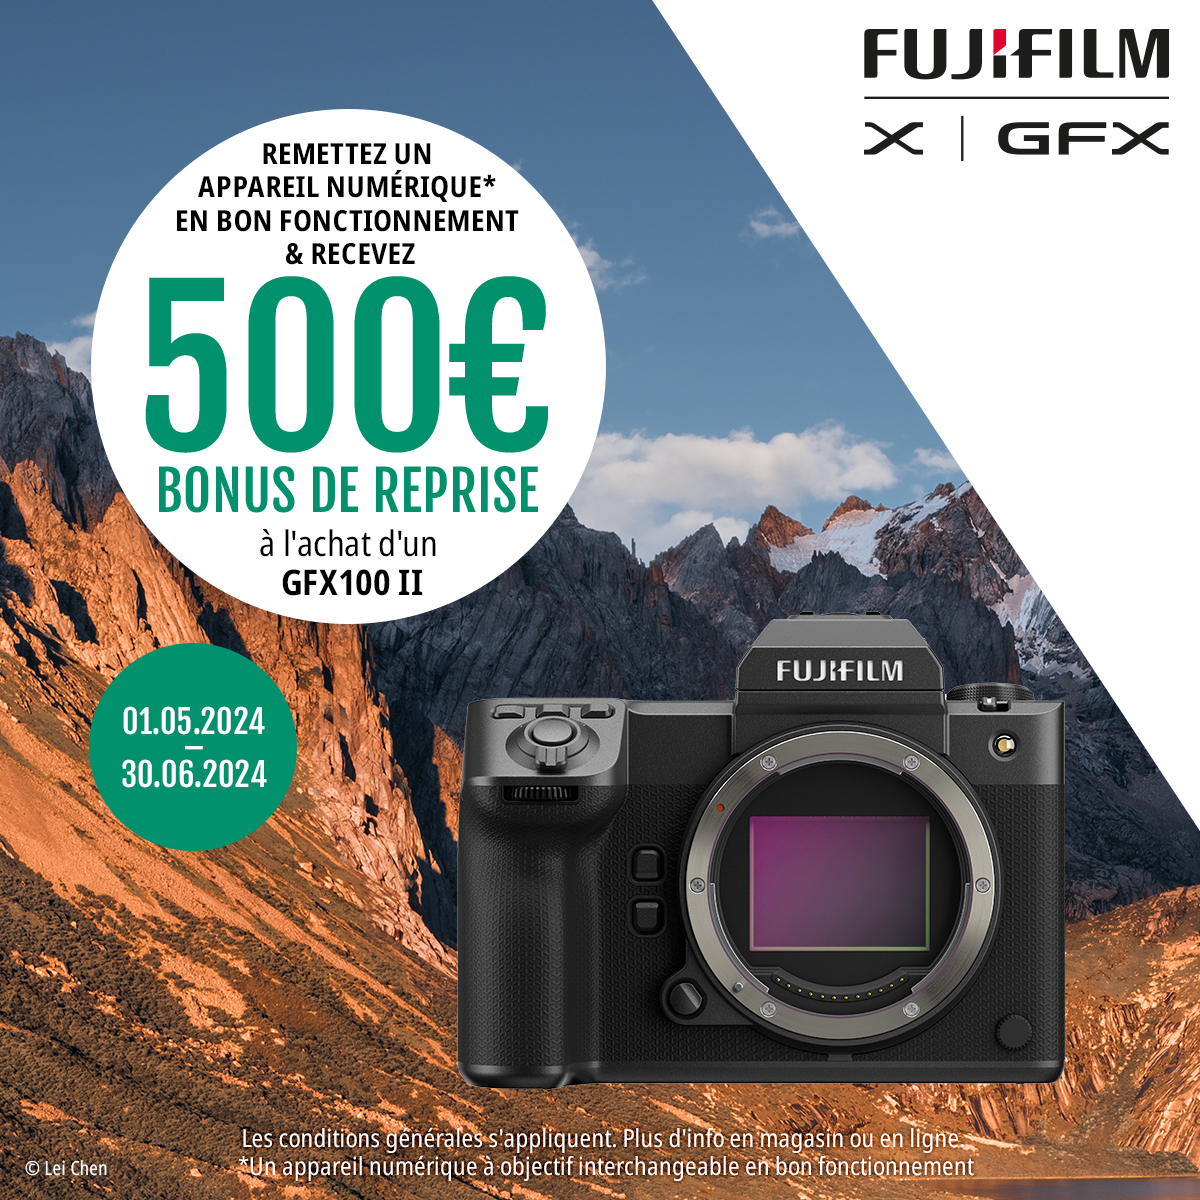 Fujiflm GFX100 II Trade-In !

Cette promotion commence le 1er mai 2024 et se poursuit jusqu’au 30 juin 2024.

Remettez un appareil photo numérique en bon fonctionnement, et recevez 500€ de reprise supplémentaire à l’achat d’un Fujifilm GFX100 II !